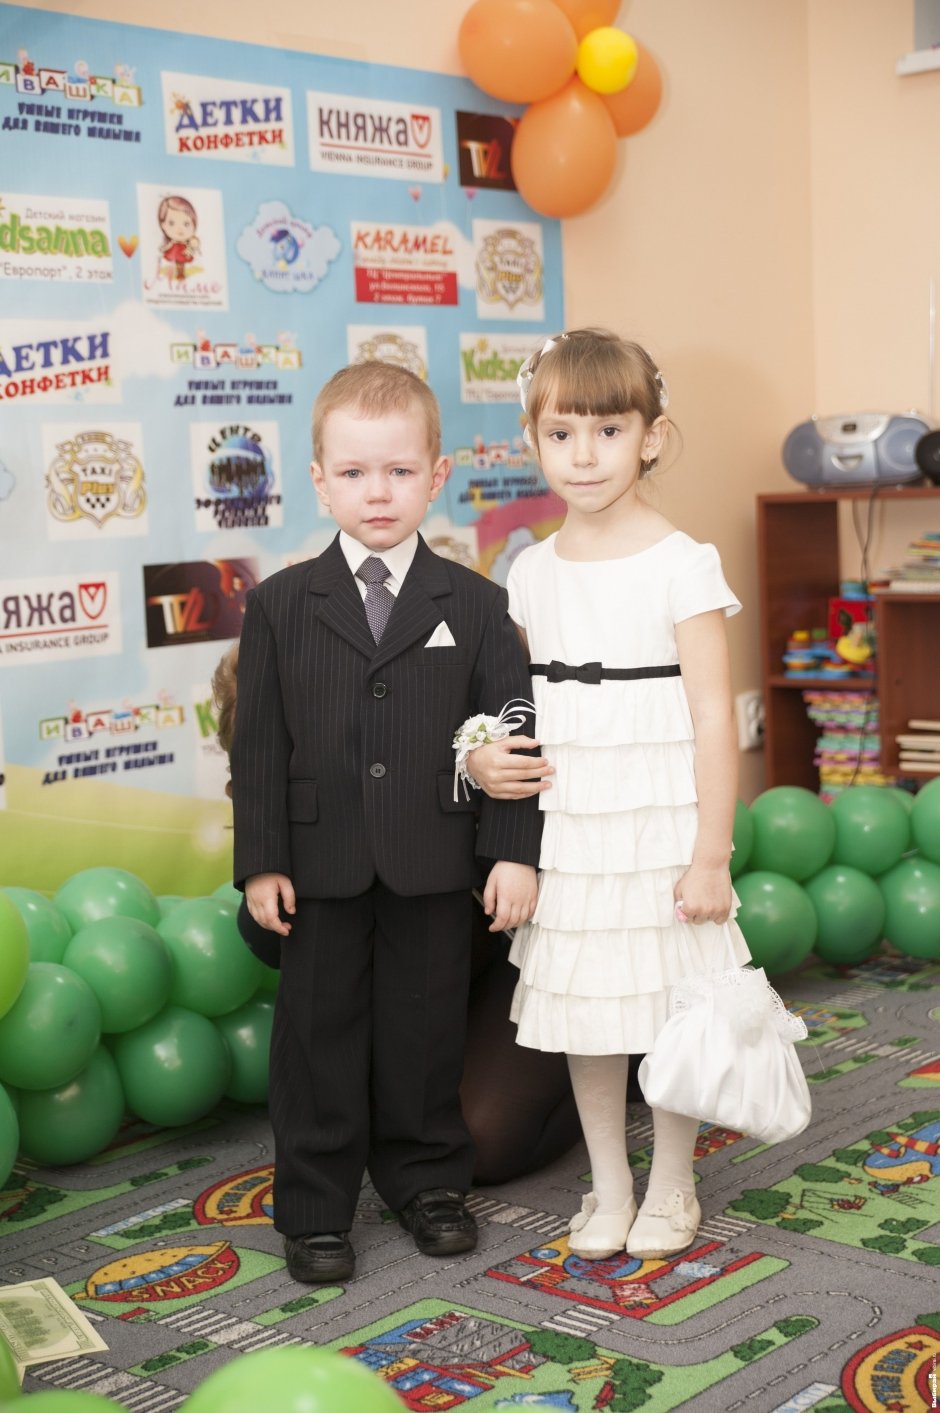 II этап конкурса «Детки-конфетки»: «Топ-модель по-детски» 06.04.14